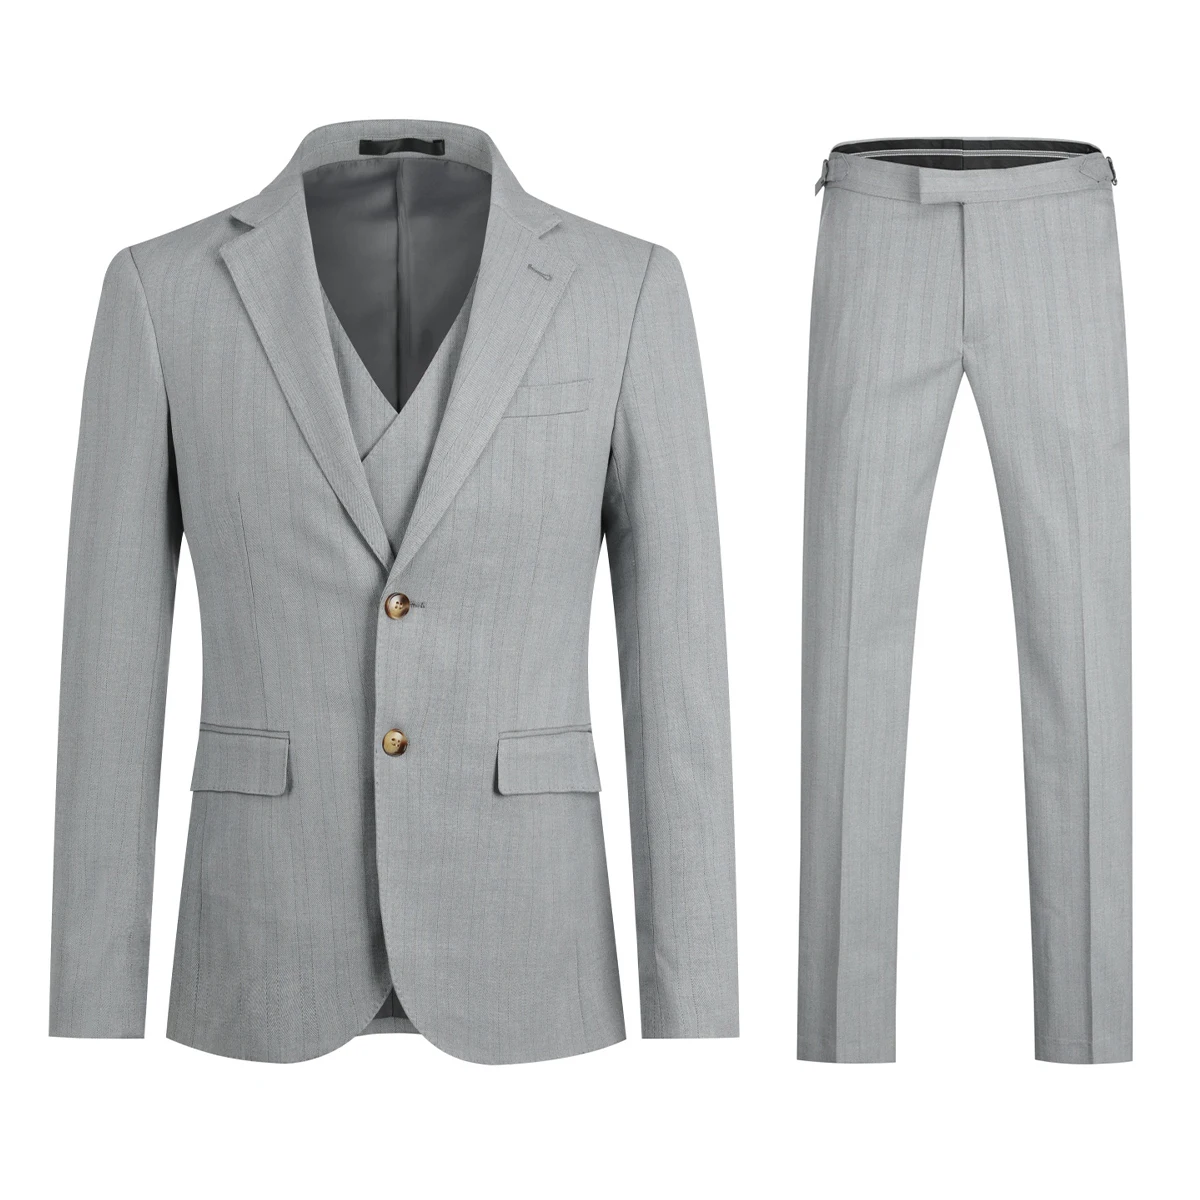 

Новый дизайн мужского делового костюма yunклома из трех частей красивый серый полосатый принт зрелый удобный модный приталенный с двумя кно...